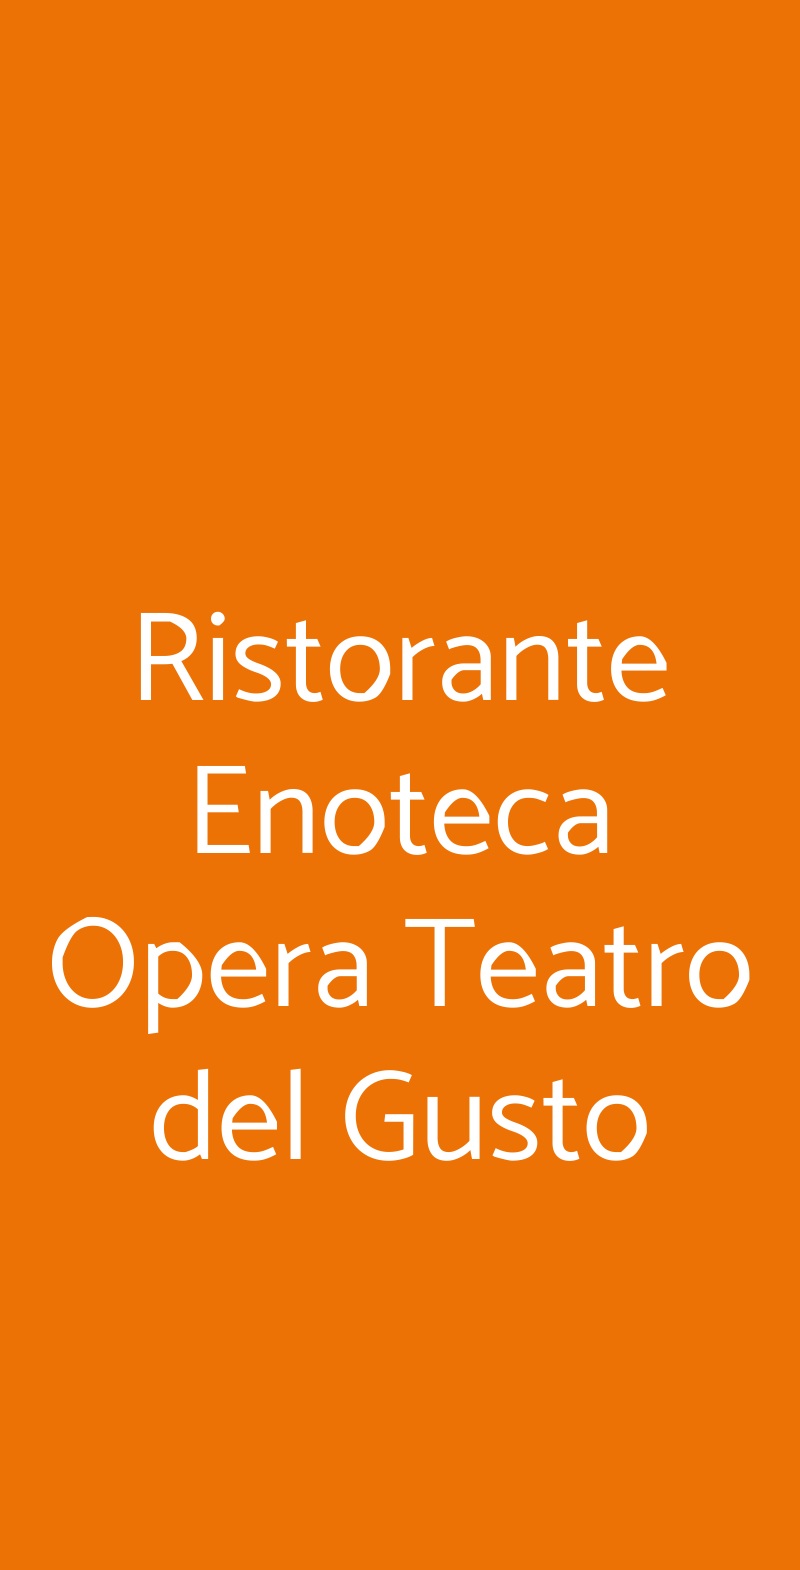 Ristorante Enoteca Opera Teatro del Gusto Sinalunga menù 1 pagina